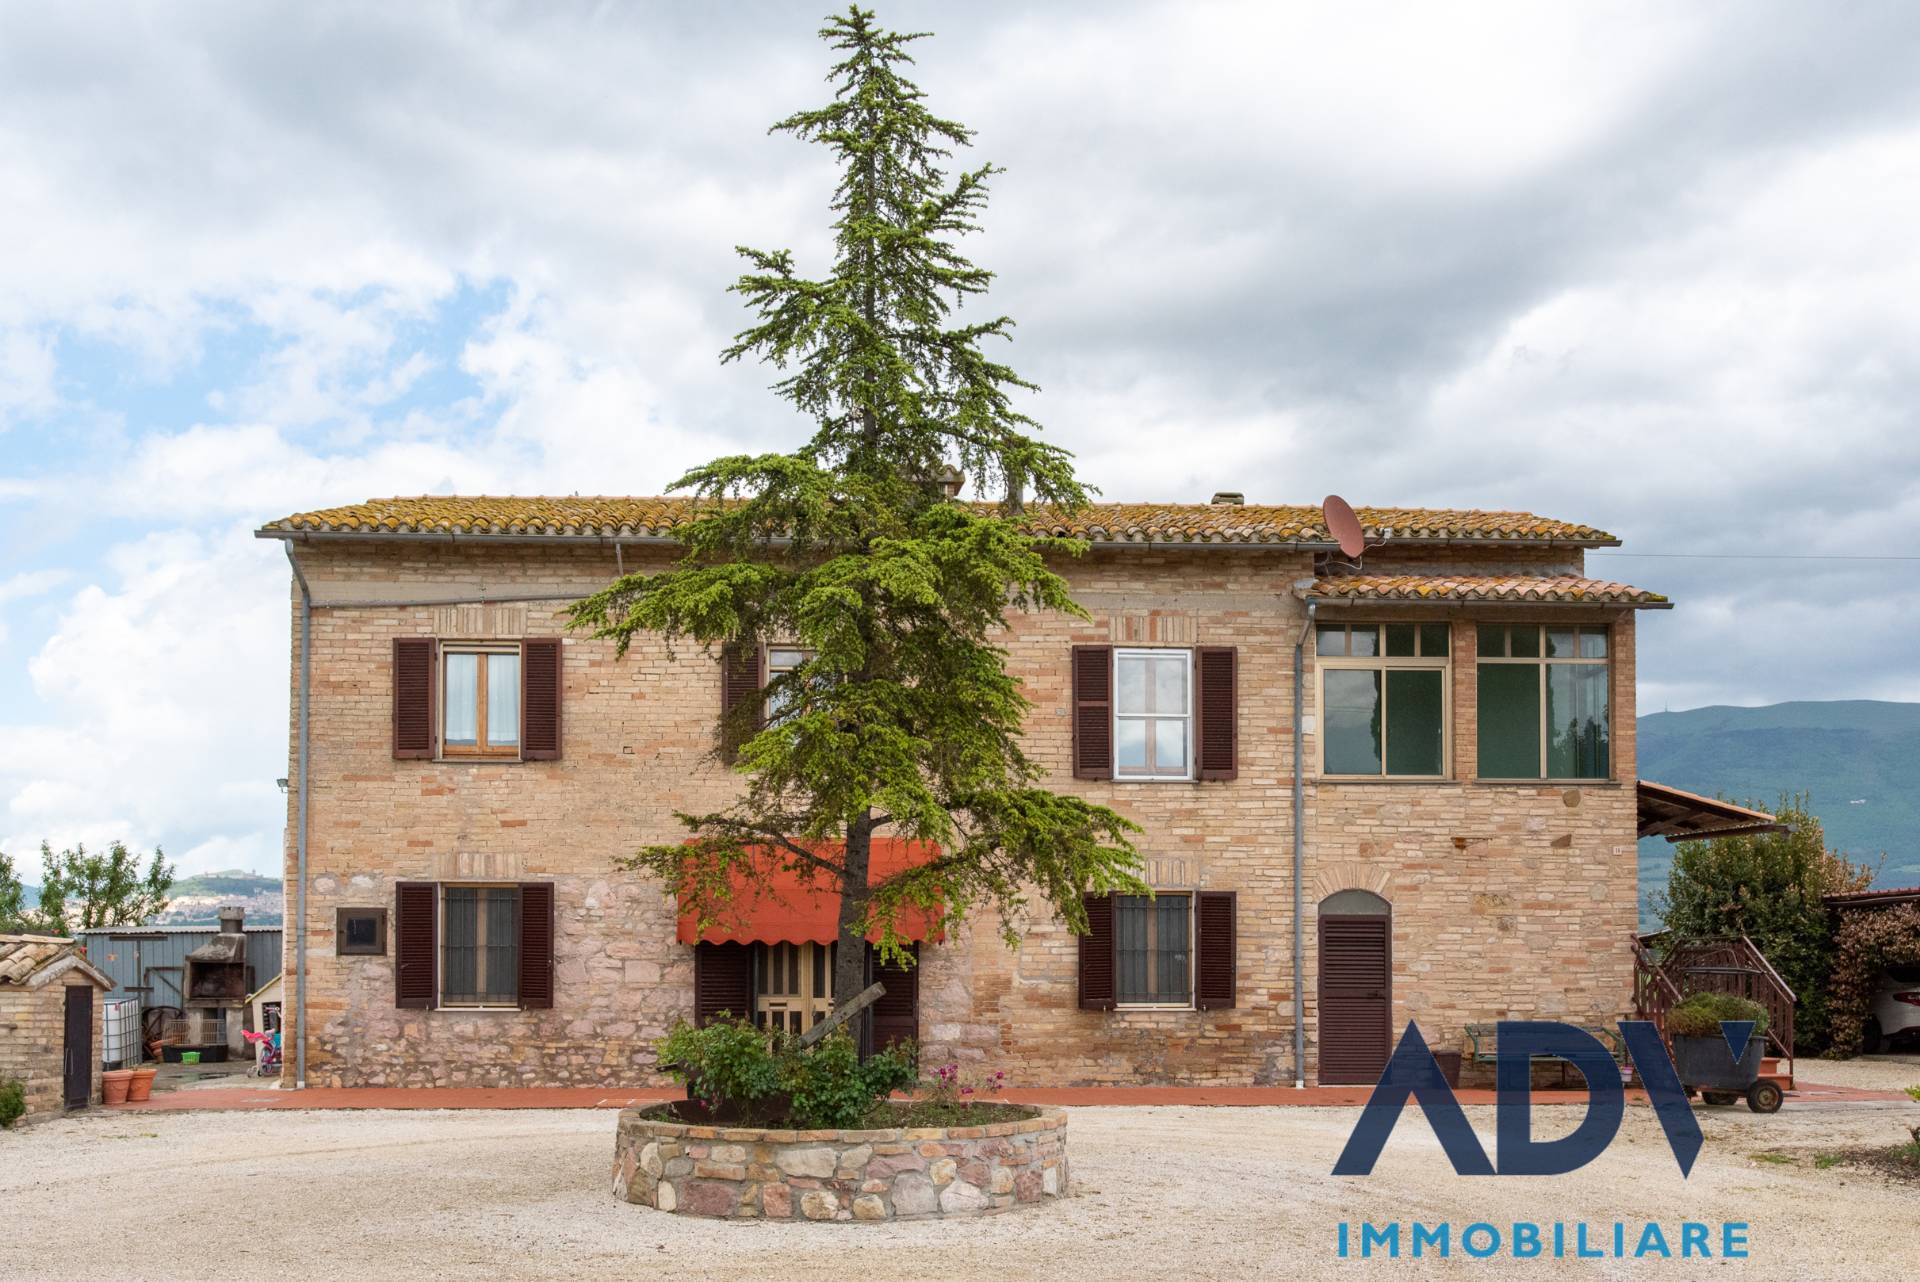 Soluzione Semindipendente in vendita a Assisi, 4 locali, zona elnuovo, prezzo € 180.000 | PortaleAgenzieImmobiliari.it